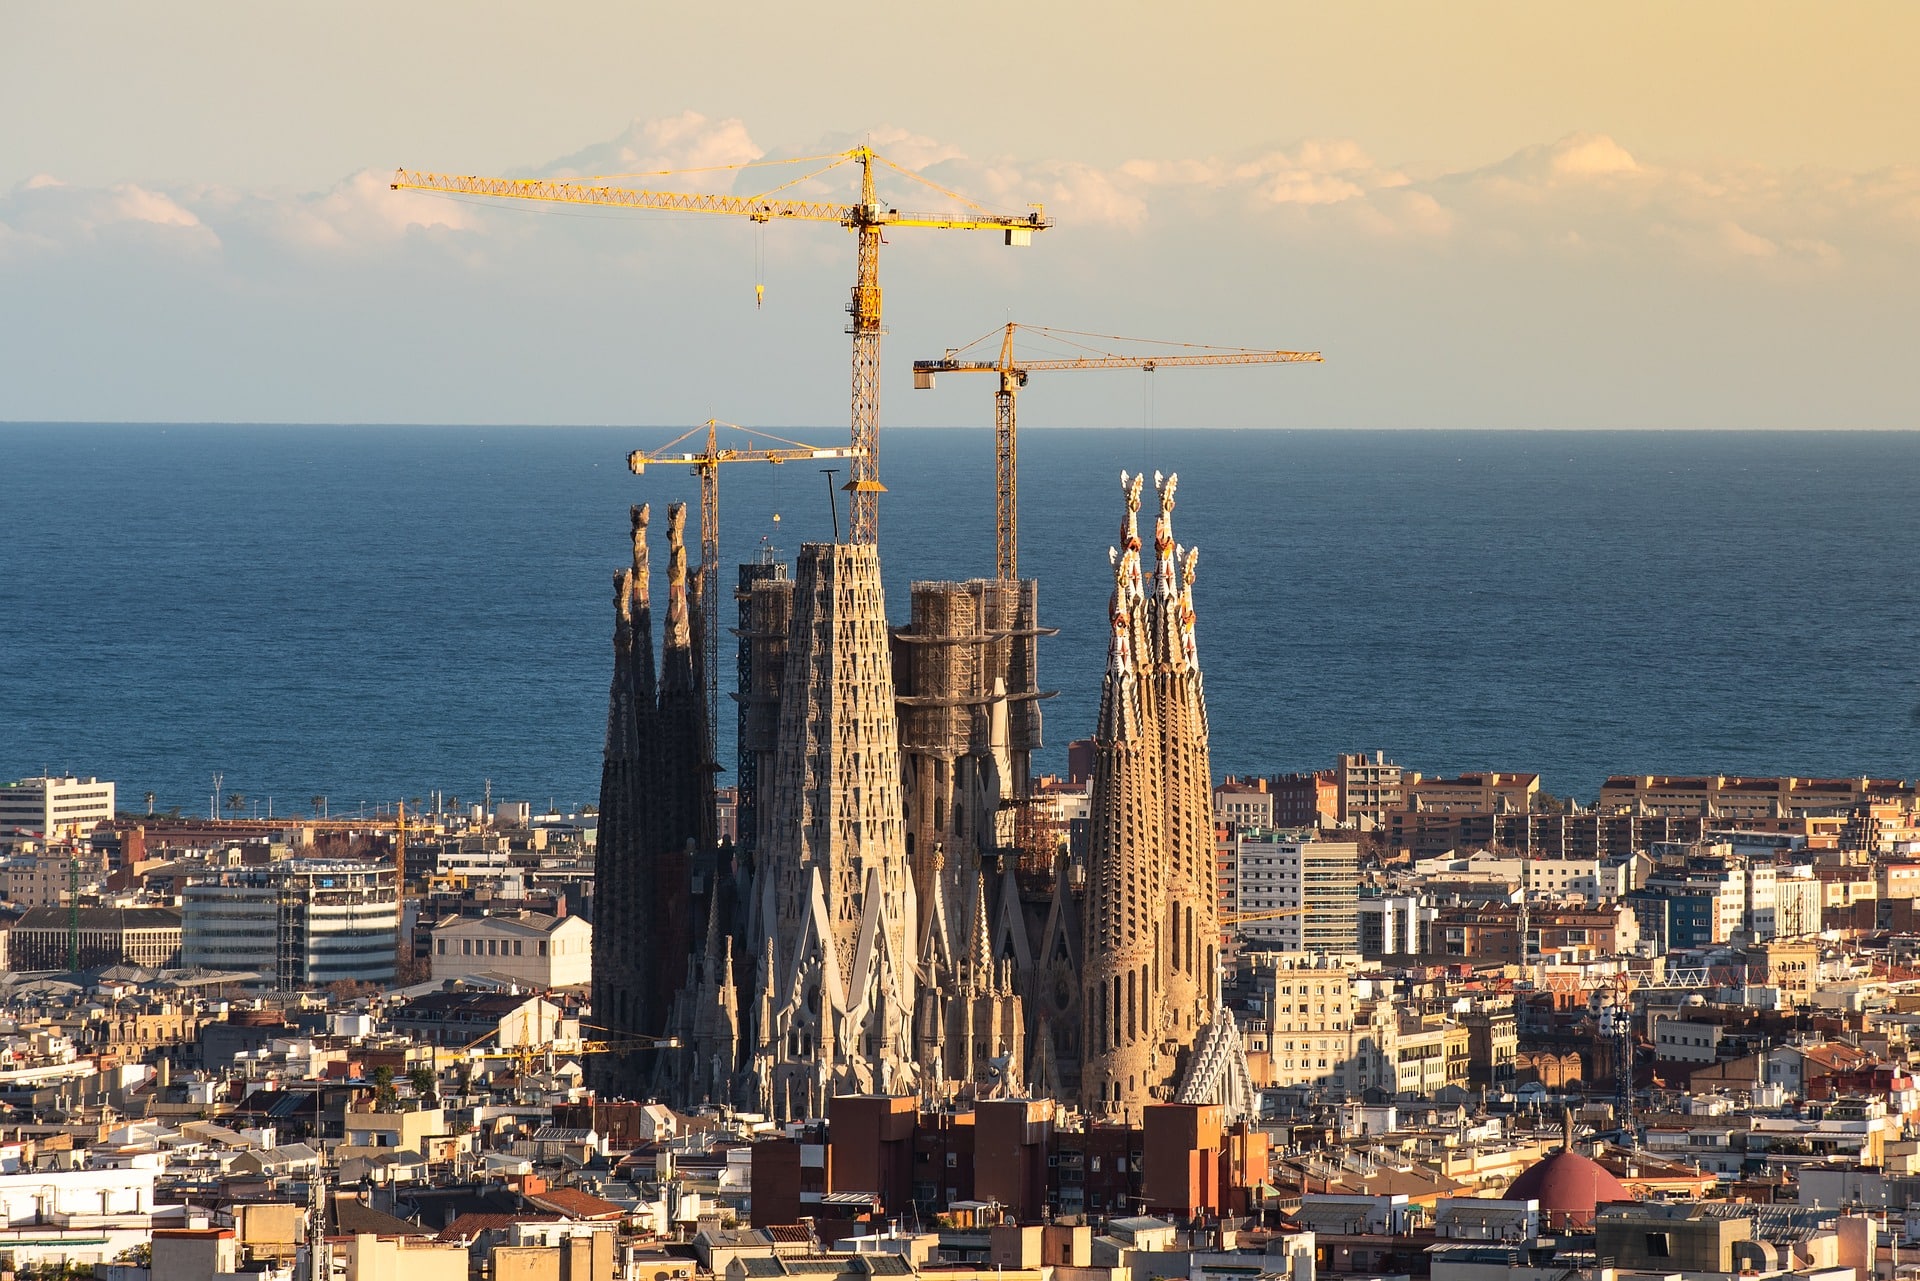 Ansicht der Sagrada Familia, umgeben von Kränen. Bild via Pixabay